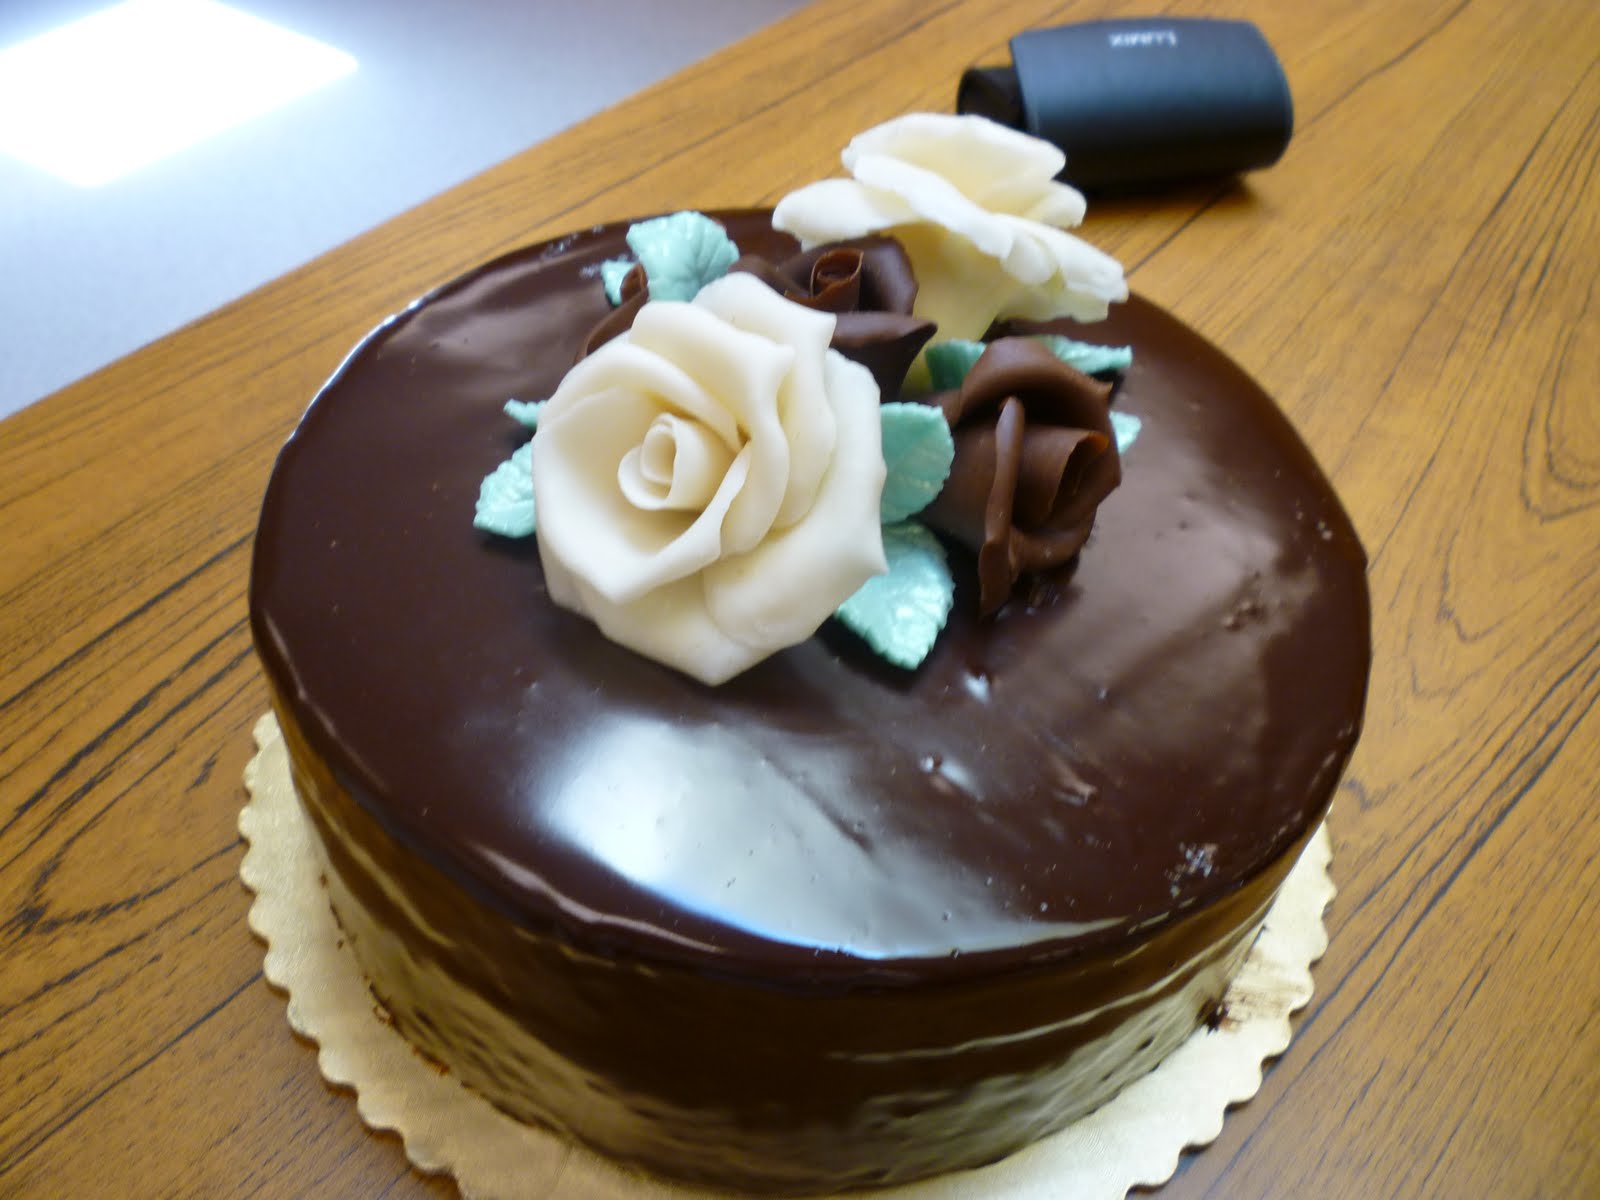 simple chocolate cake decorating ideas Cake Decorating Ideas | Project on Craftsy: Chocolate Kahlua Cake 